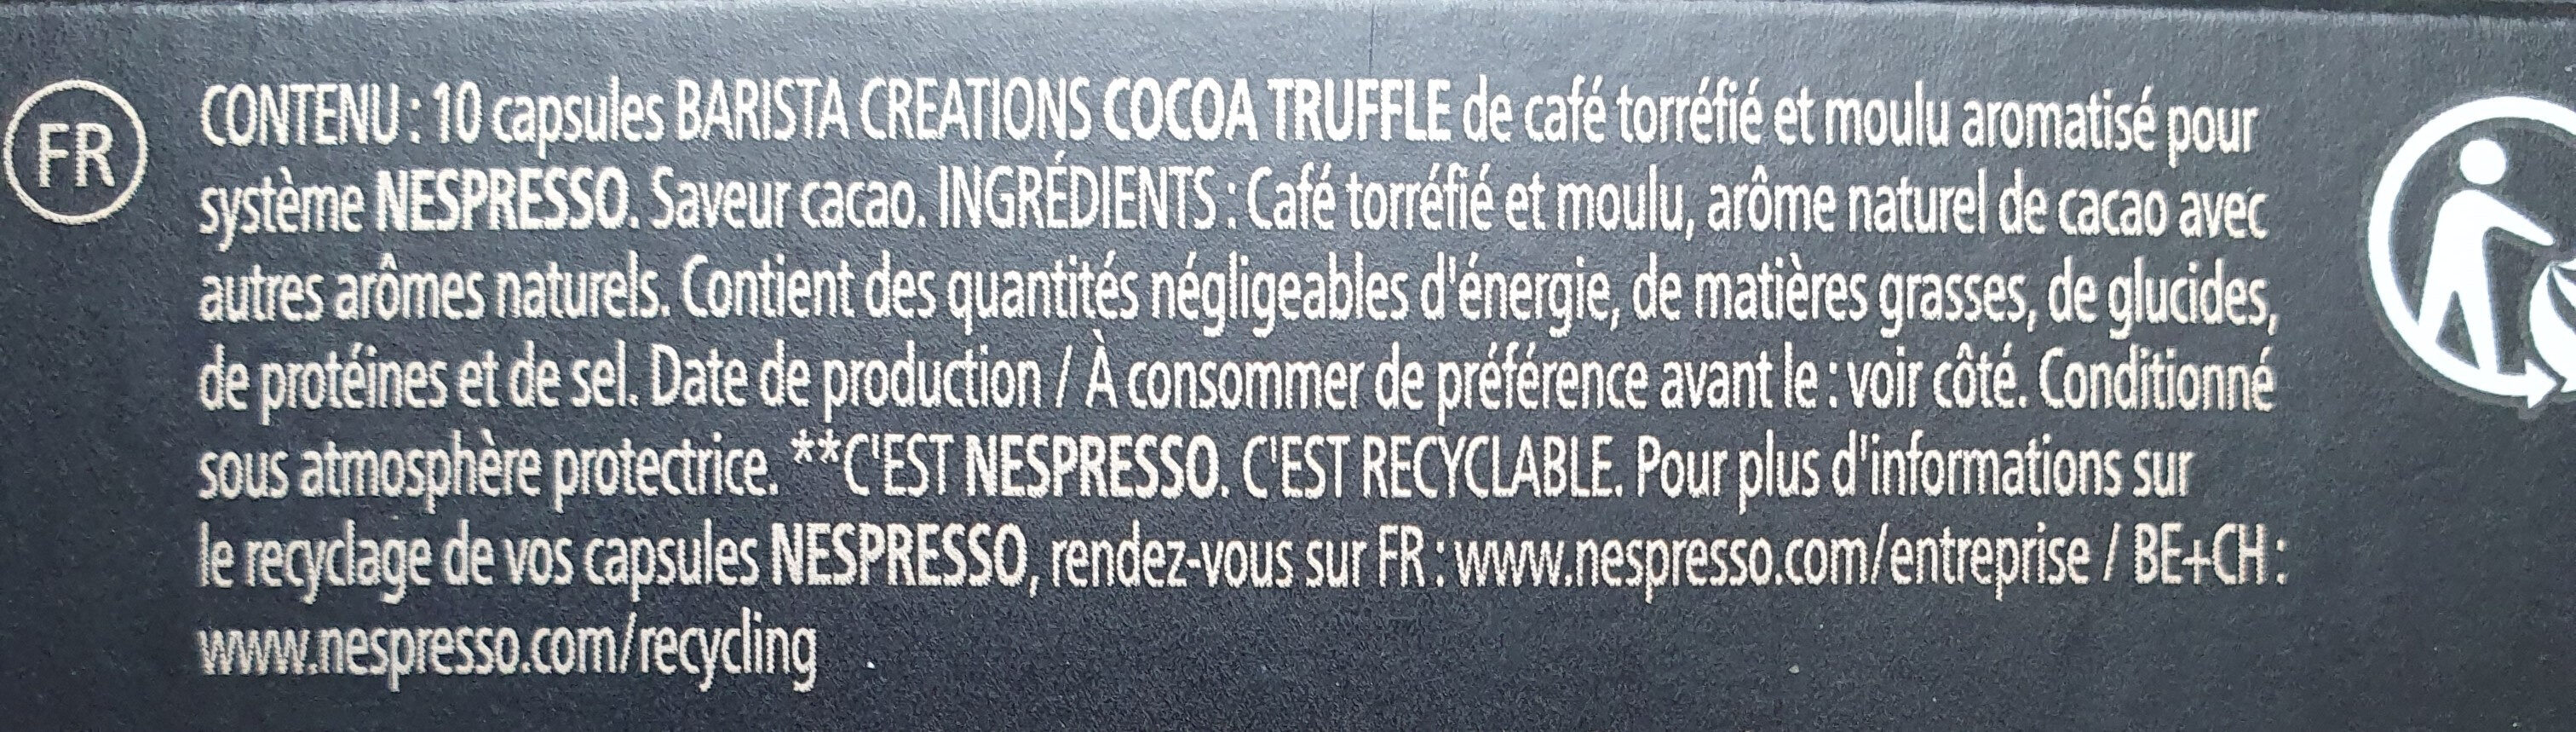 Nespresso Cocoa Truffle - Ingredients - nl